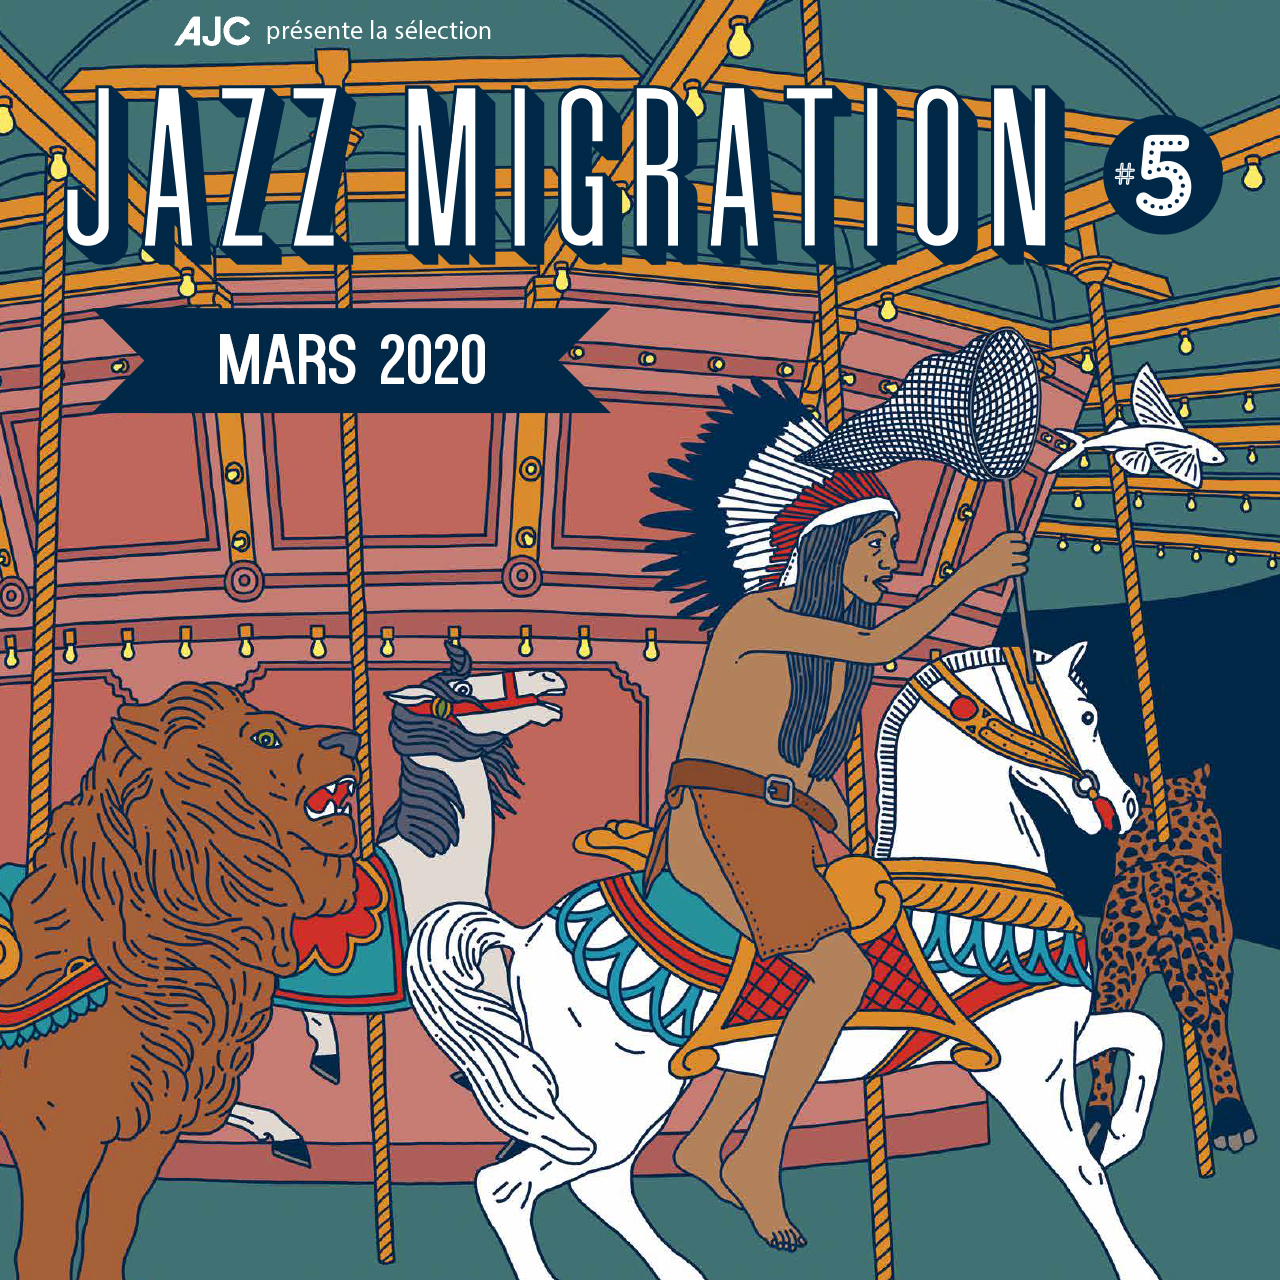 Lire la suite à propos de l’article Tournée Jazz Migration #5 – Mars 2020